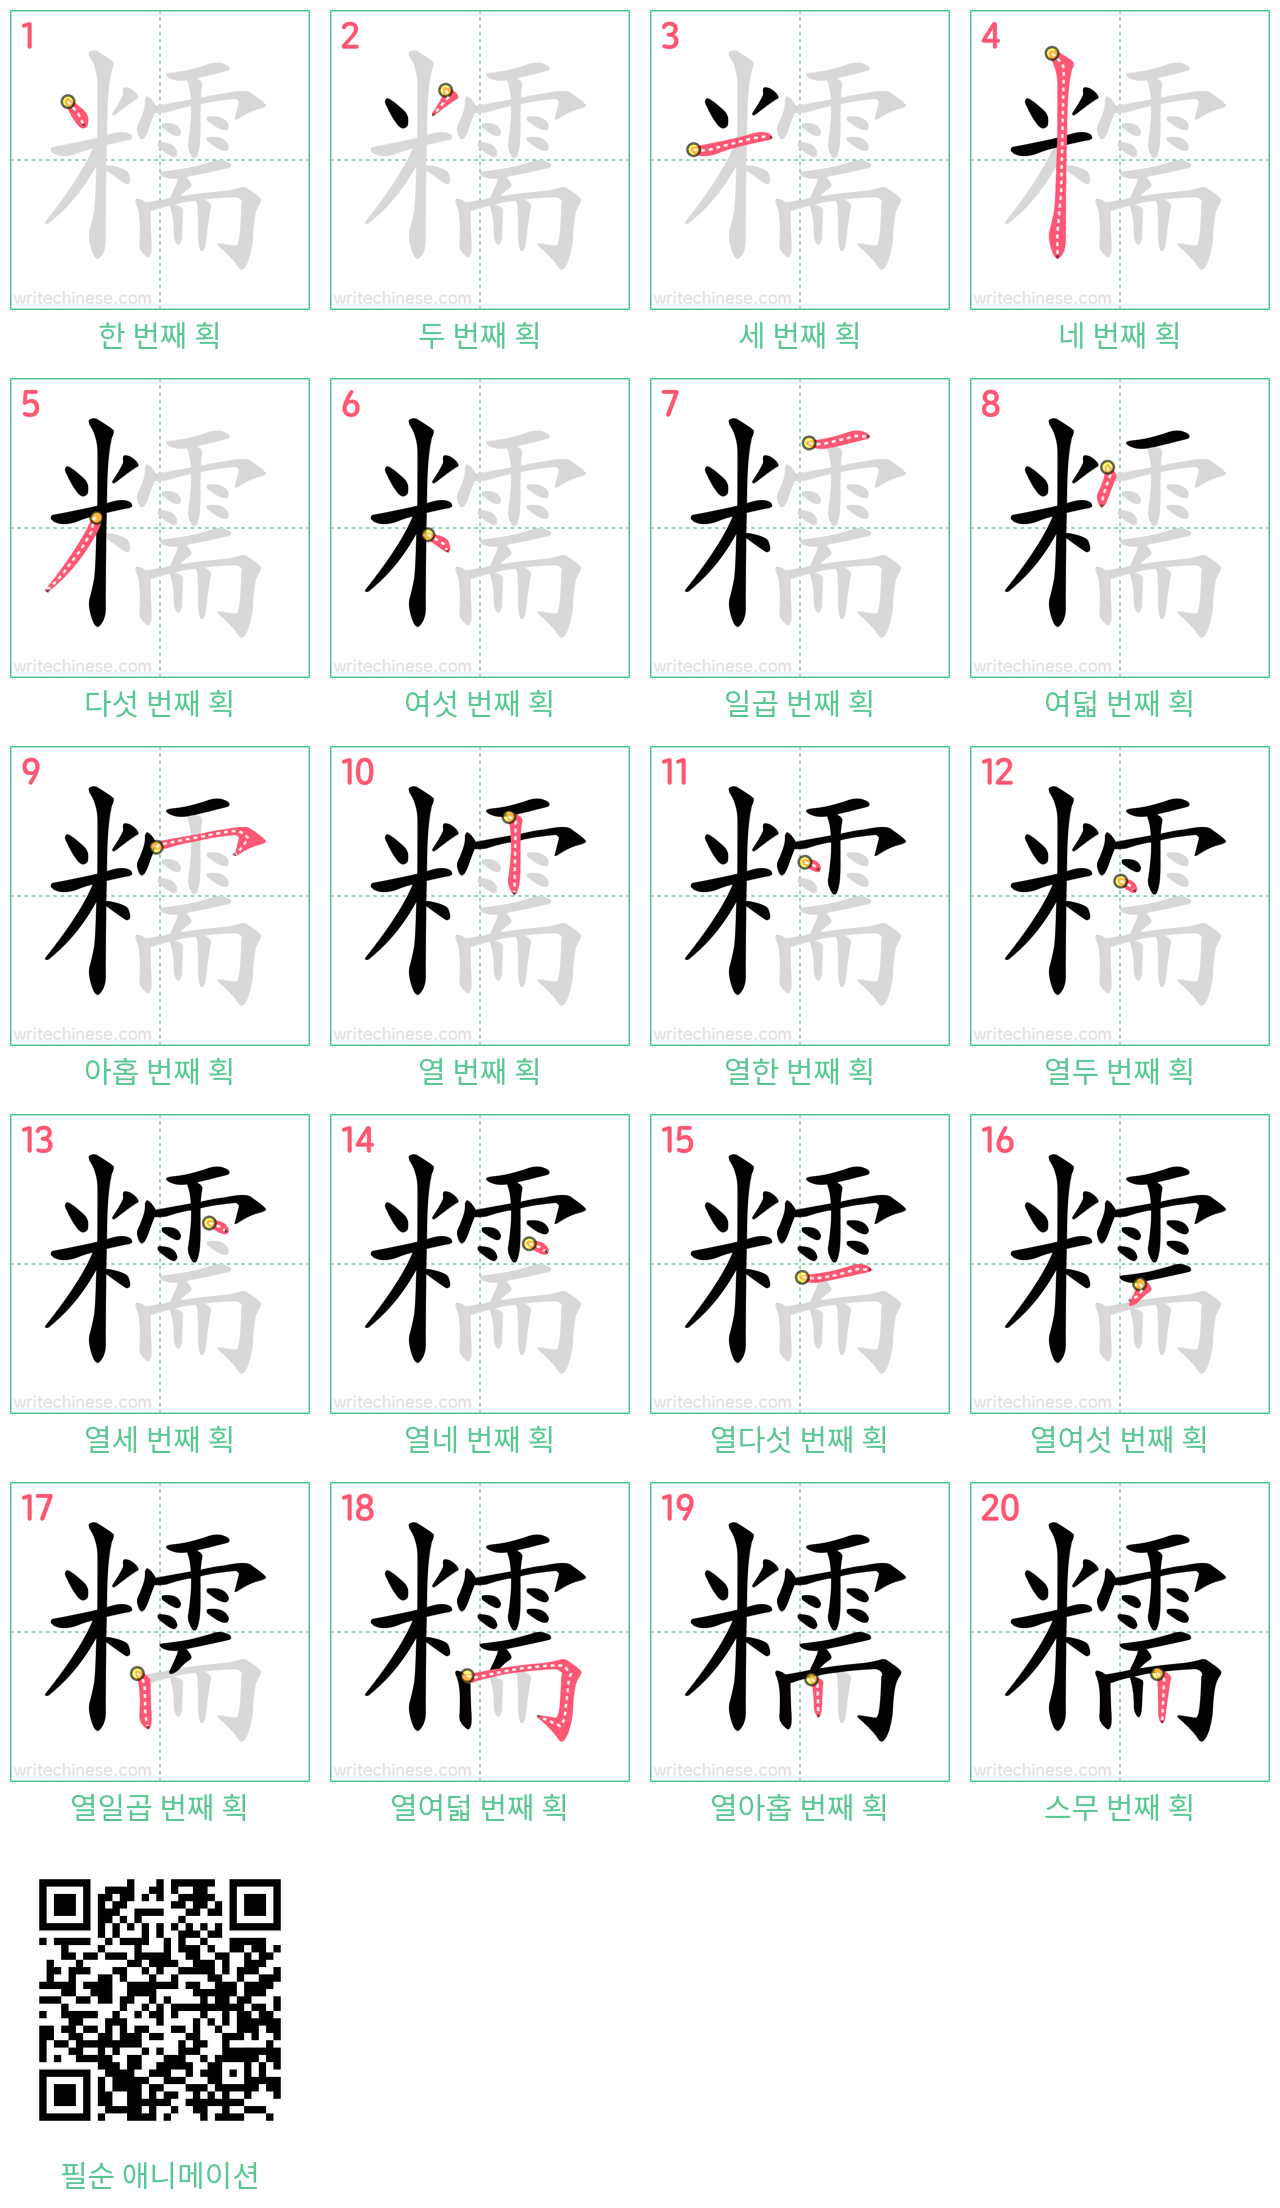 糯 step-by-step stroke order diagrams